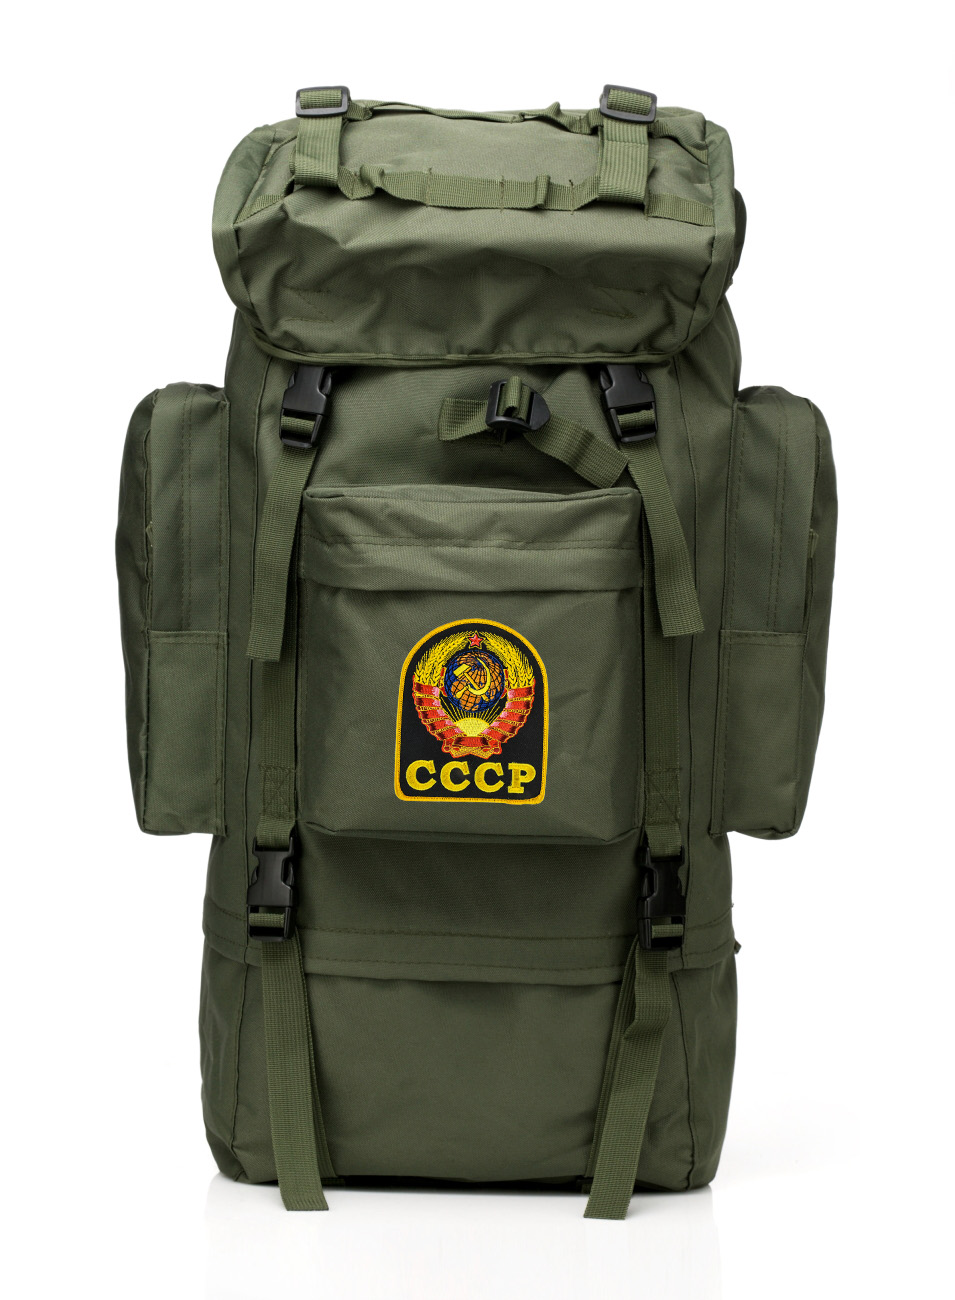 Функционал на полную! Многодневный тактический рюкзак «Морская пехота» с эмблемой СССР